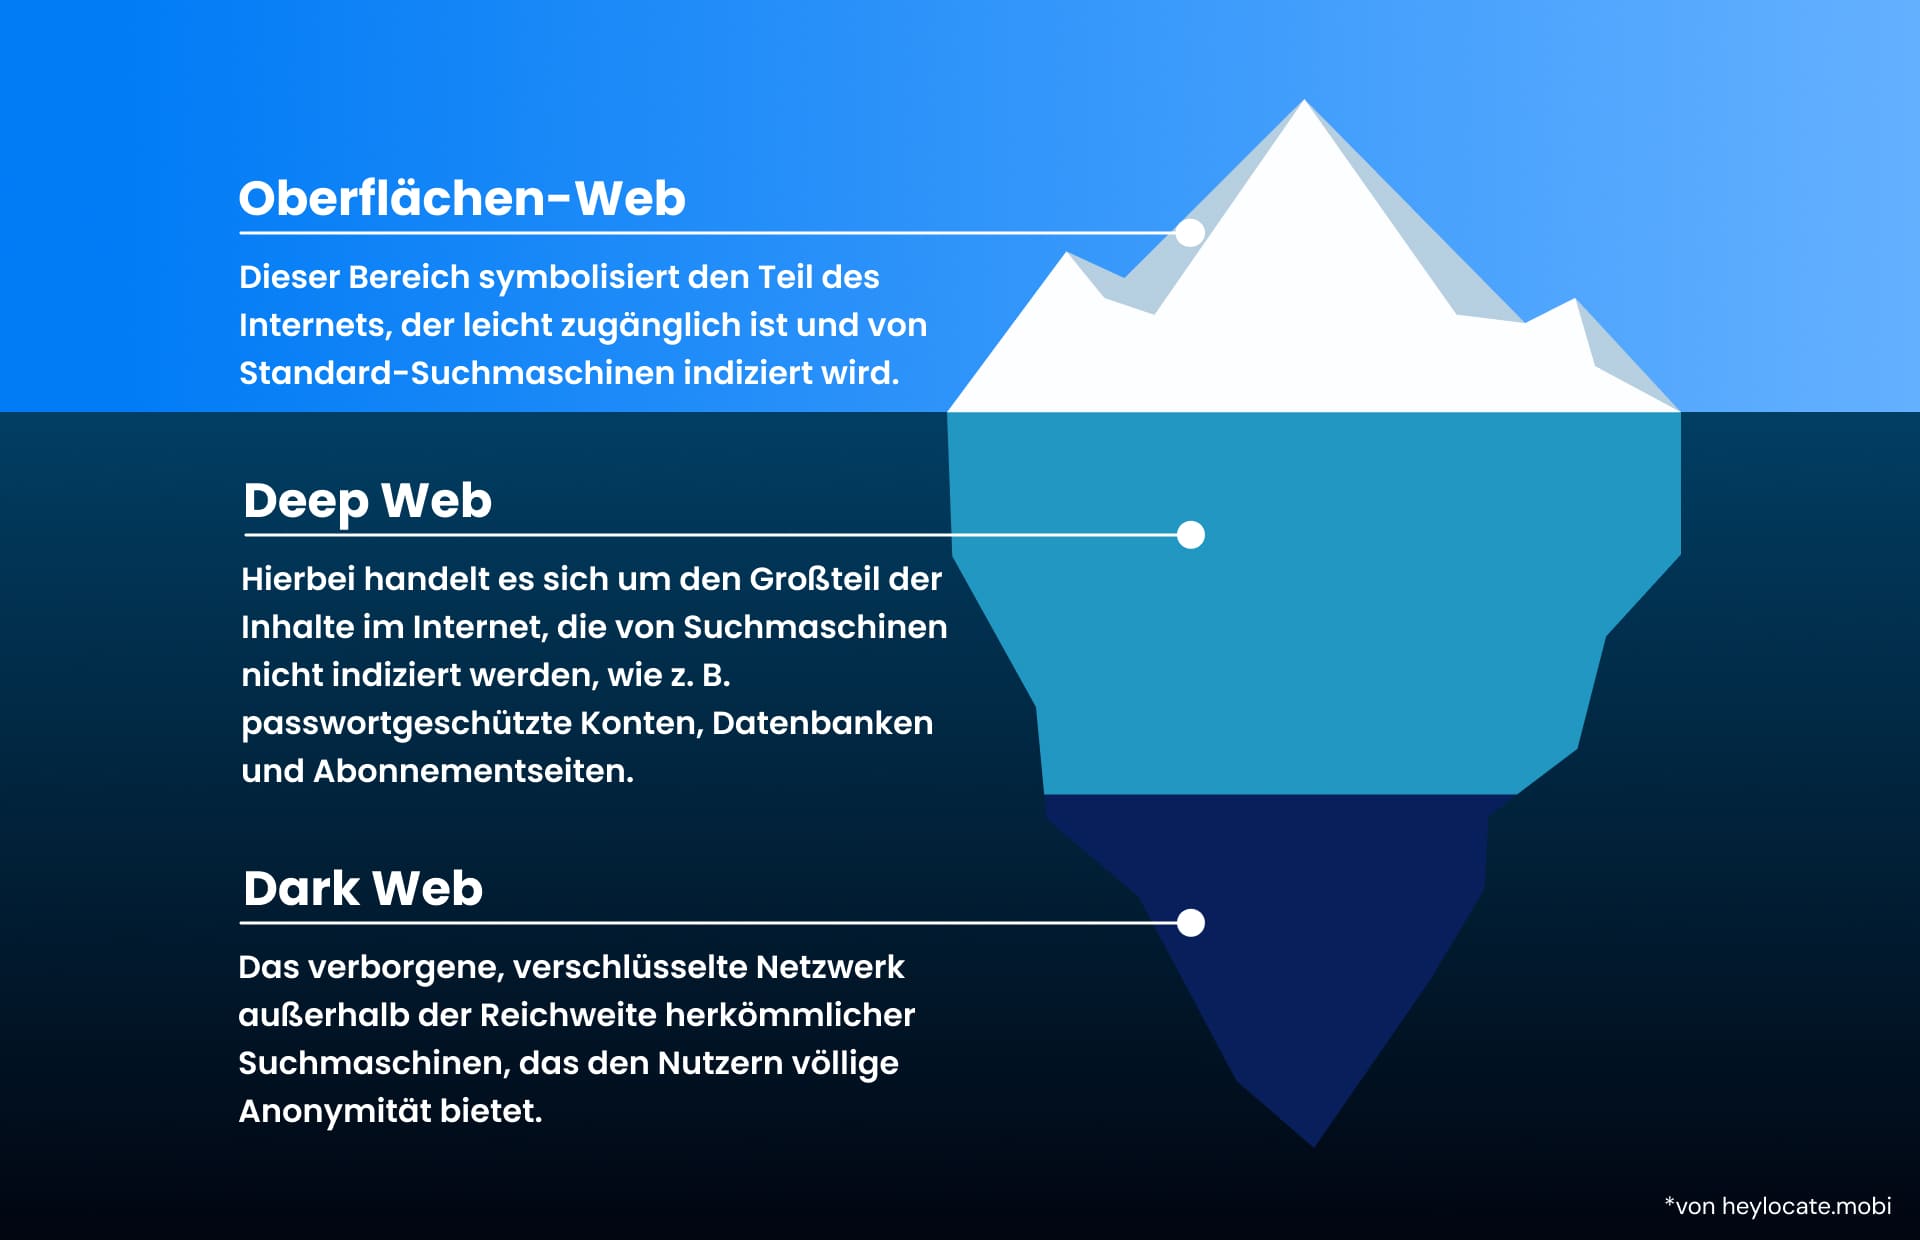 Ein Bild eines Eisbergs mit drei Teilen des Webs: das öffentliche Oberflächen-Web, das Deep Web und das anonyme Dark Web